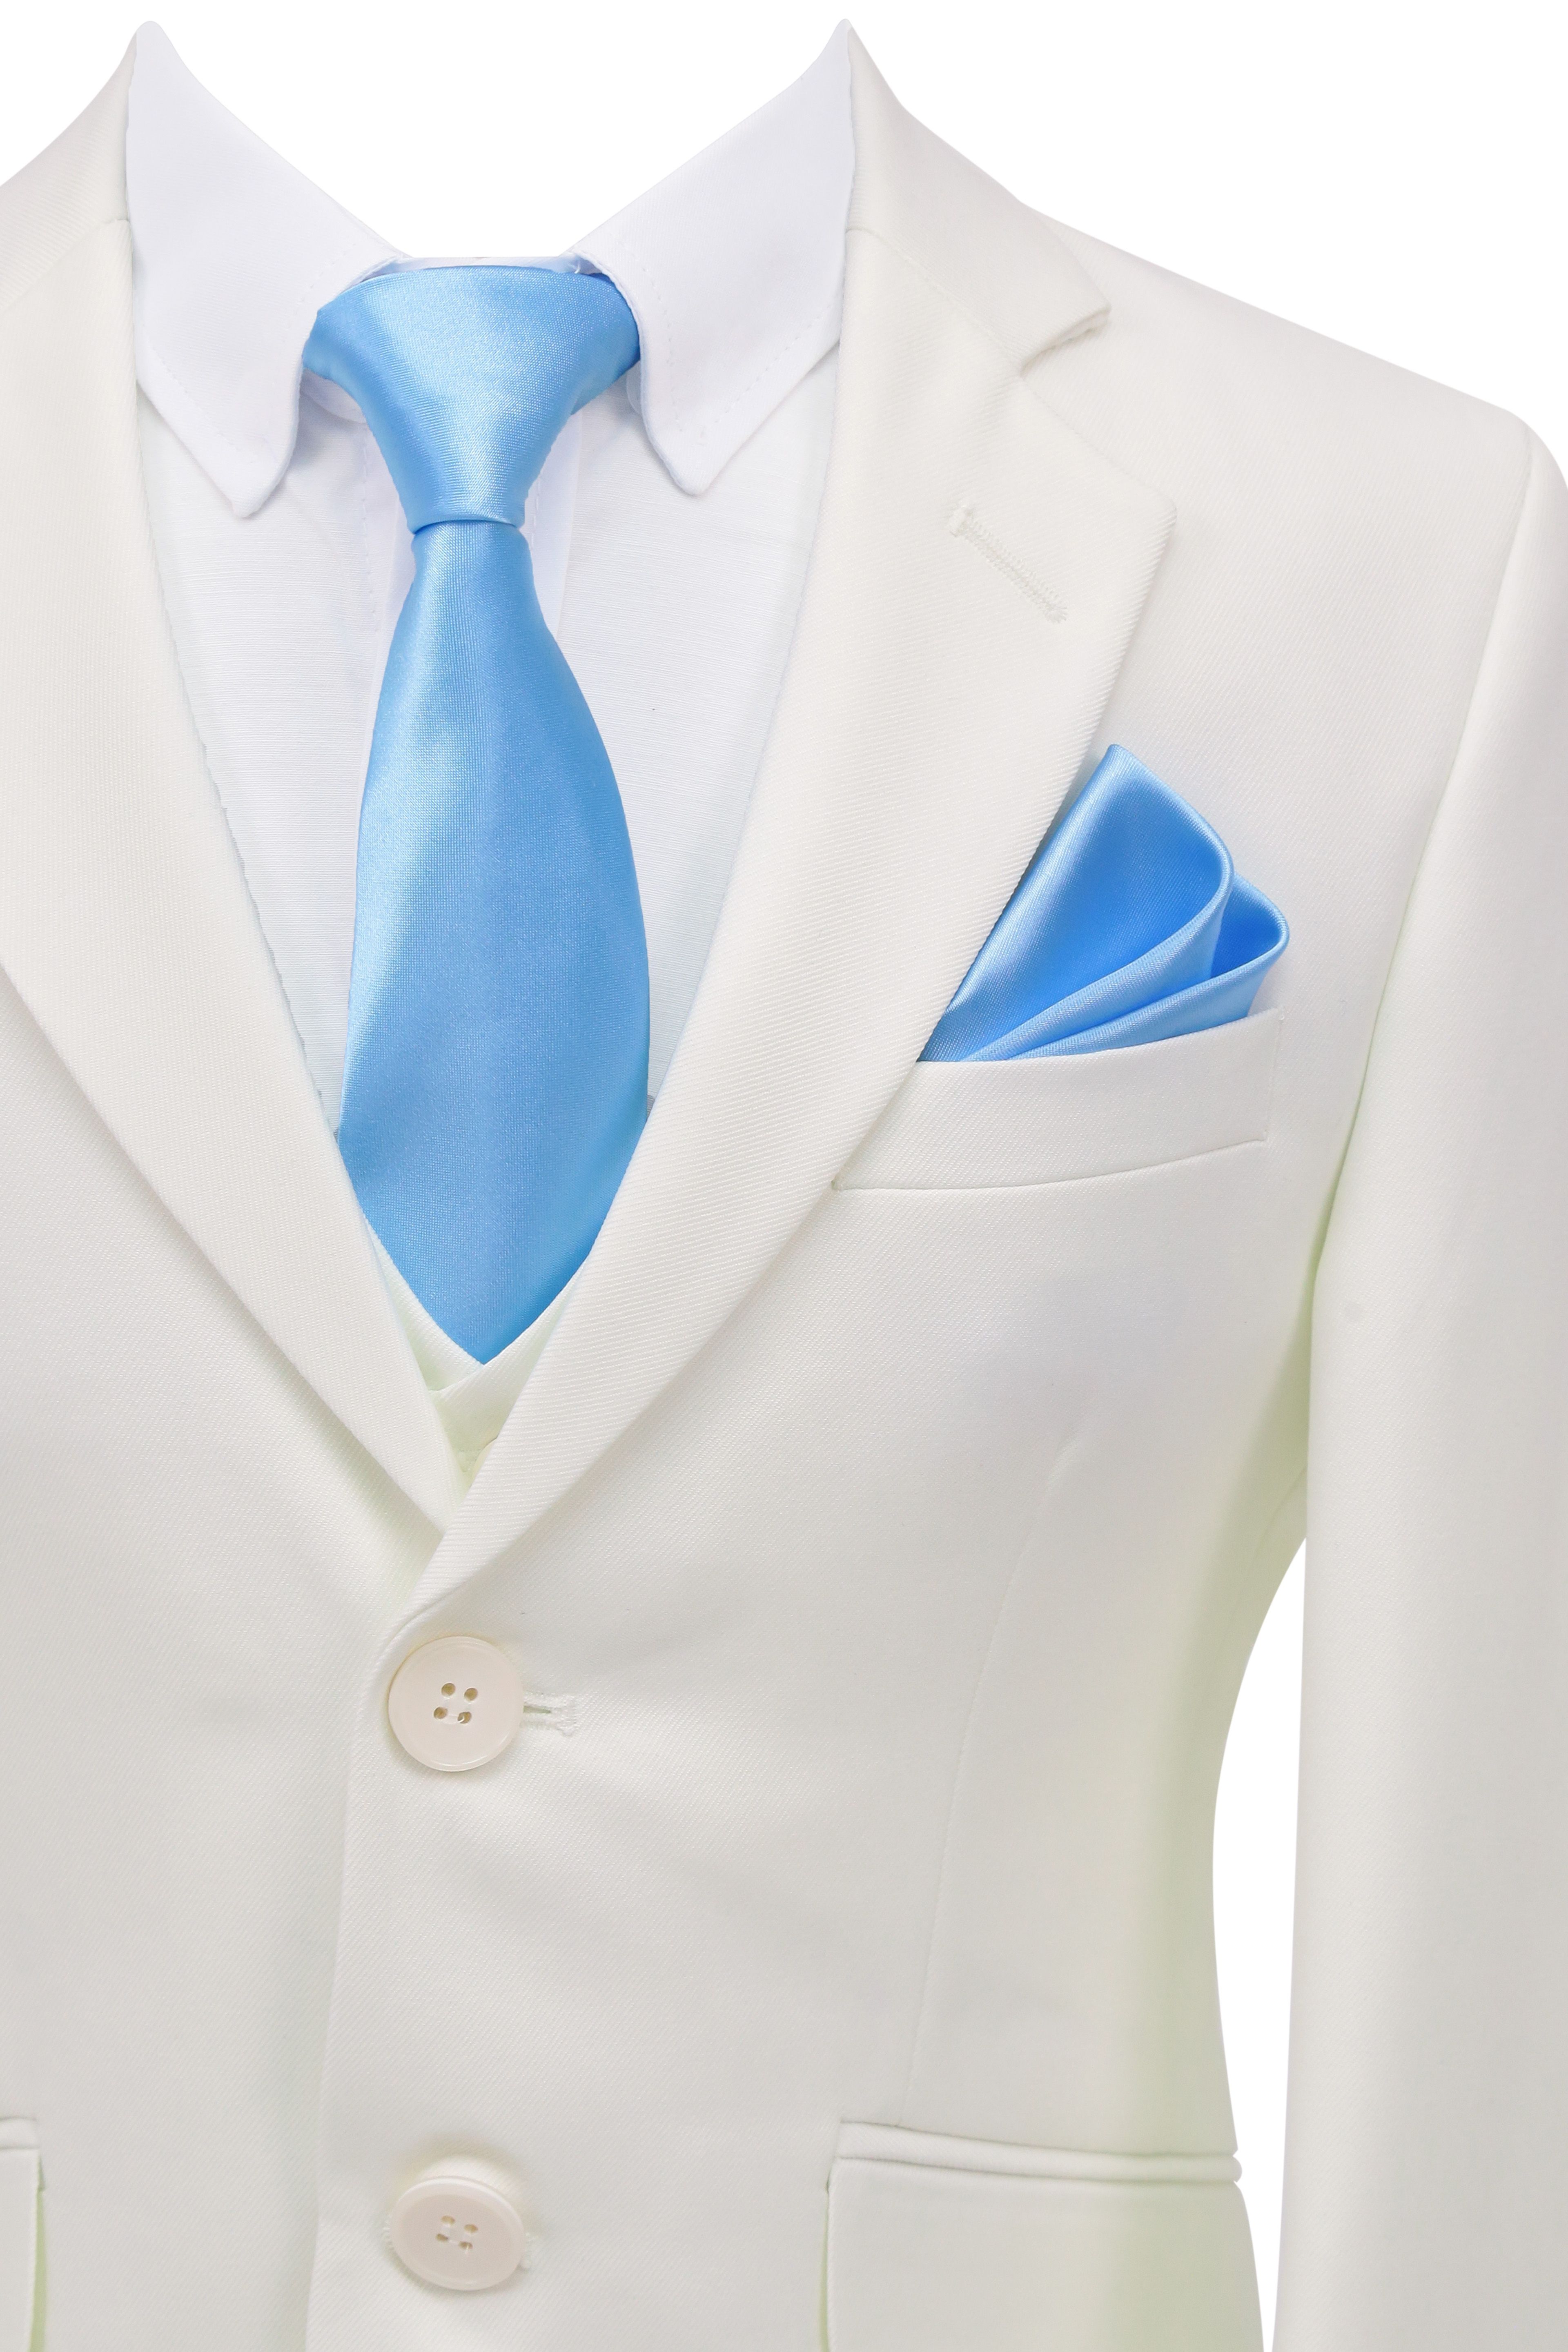 Boys 6 Piece Communion Tailored Fit Suit Set - White